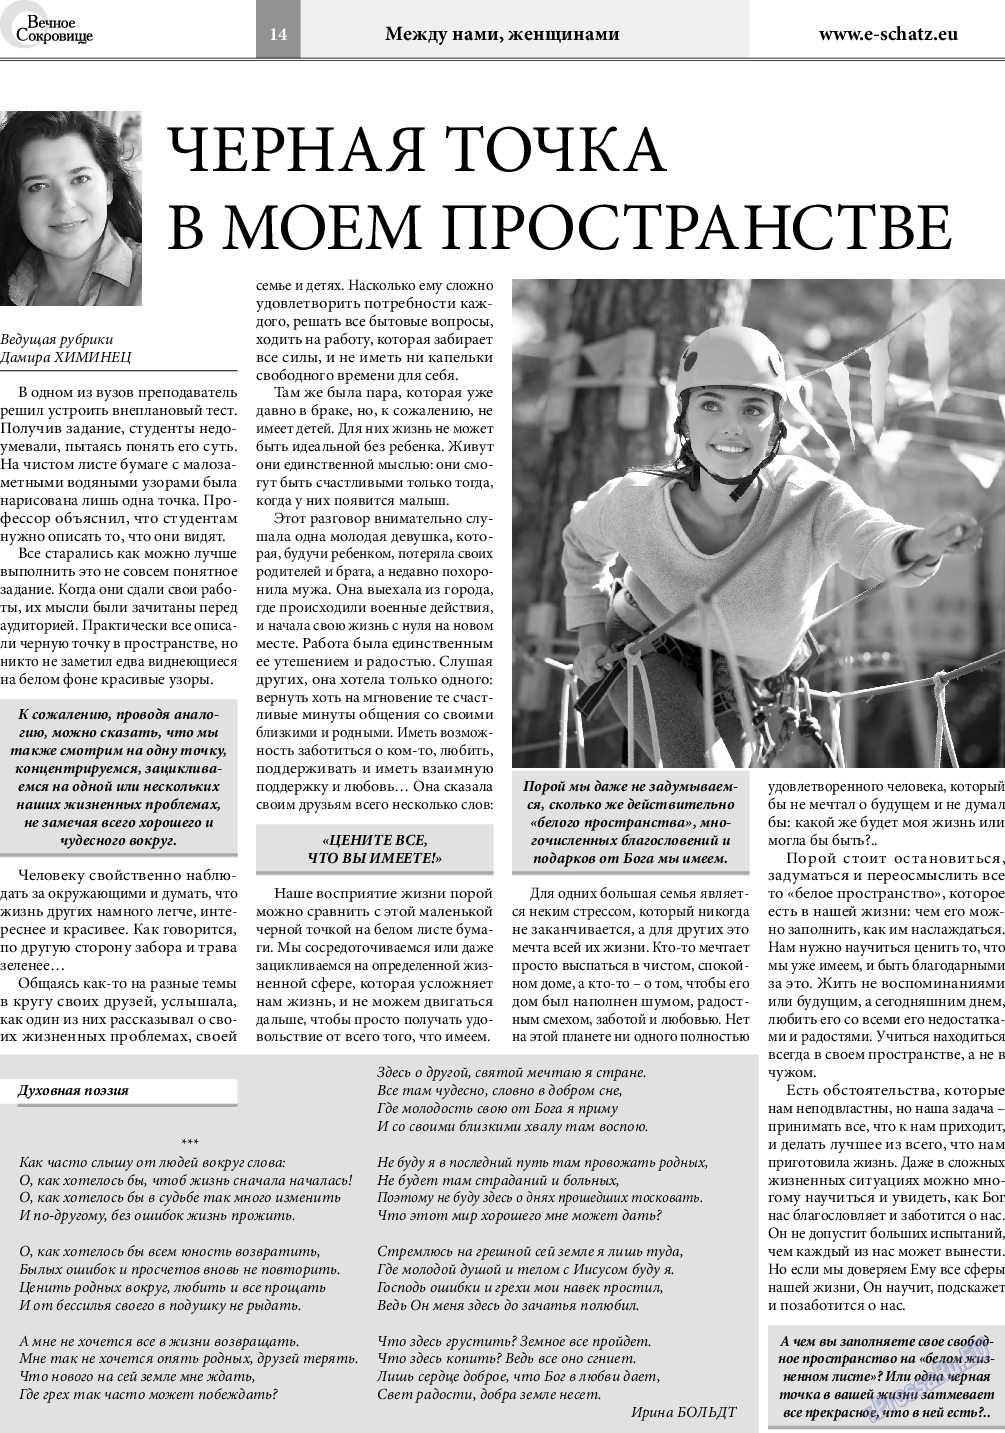 Вечное сокровище (газета). 2018 год, номер 3, стр. 14